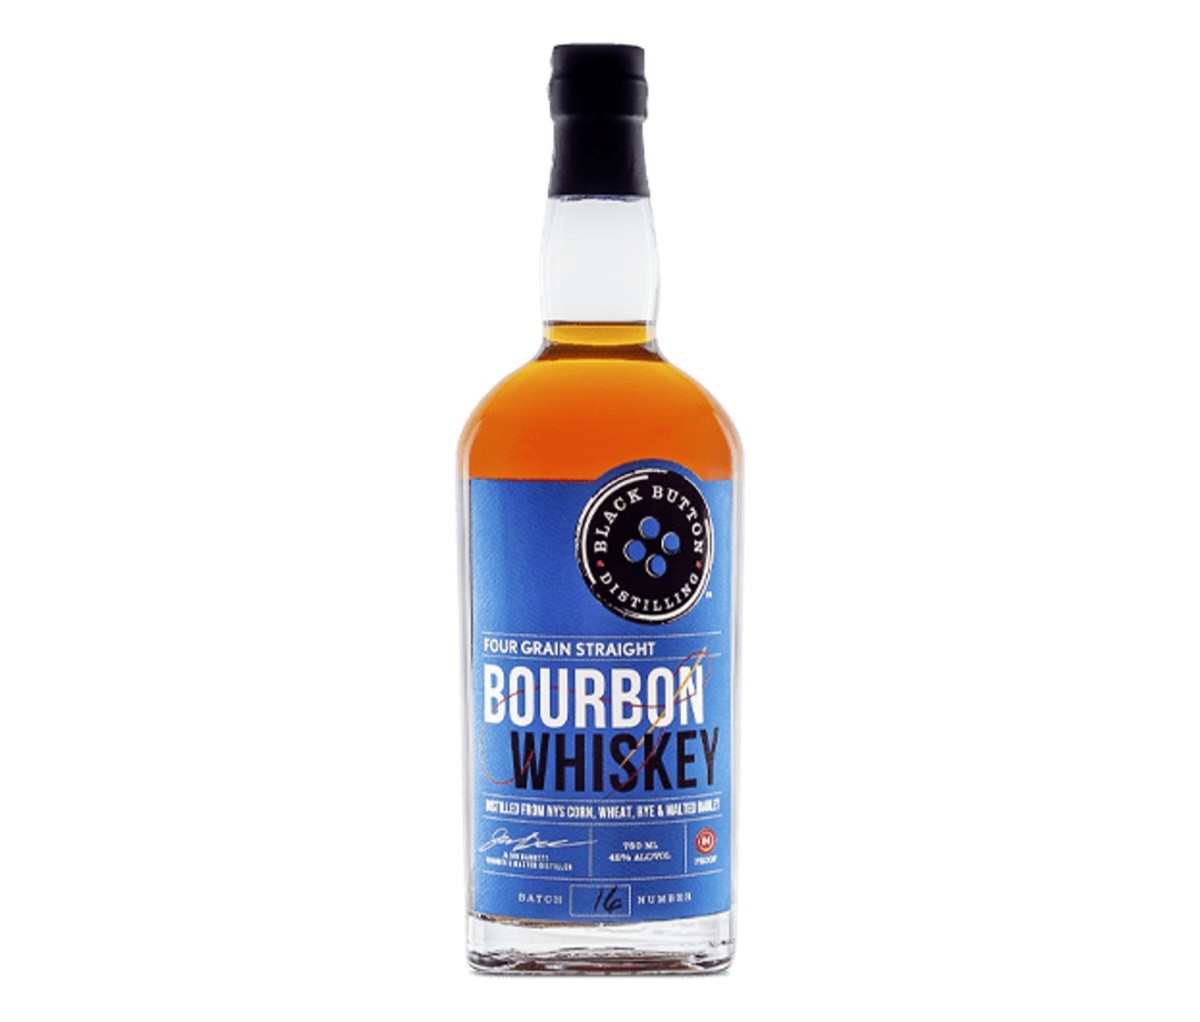 A bottle of Black Button Four Grain Straight Bourbon